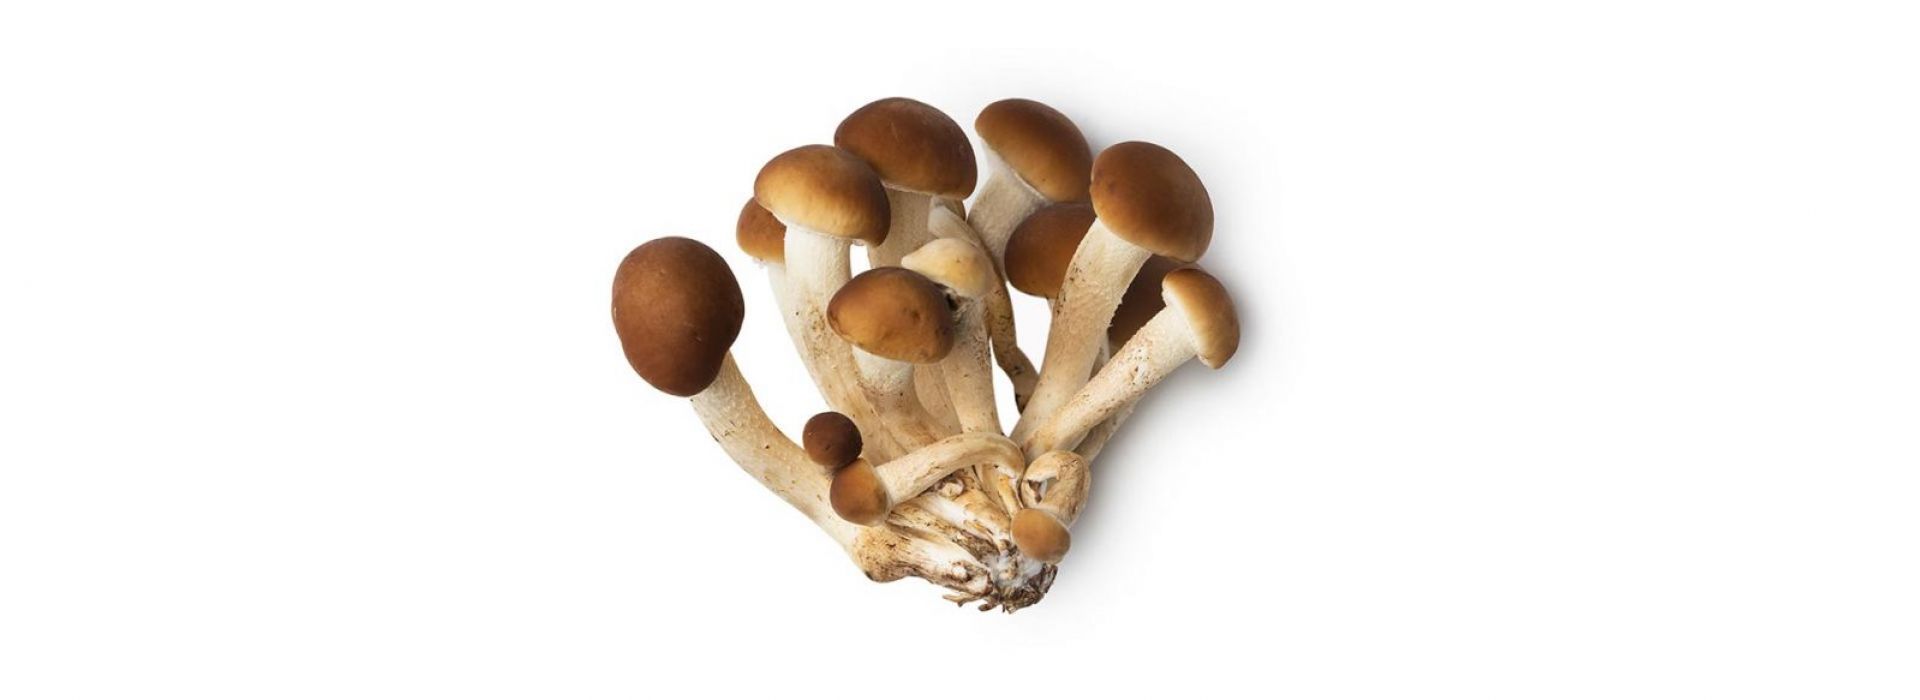 Mushroom Pioppino